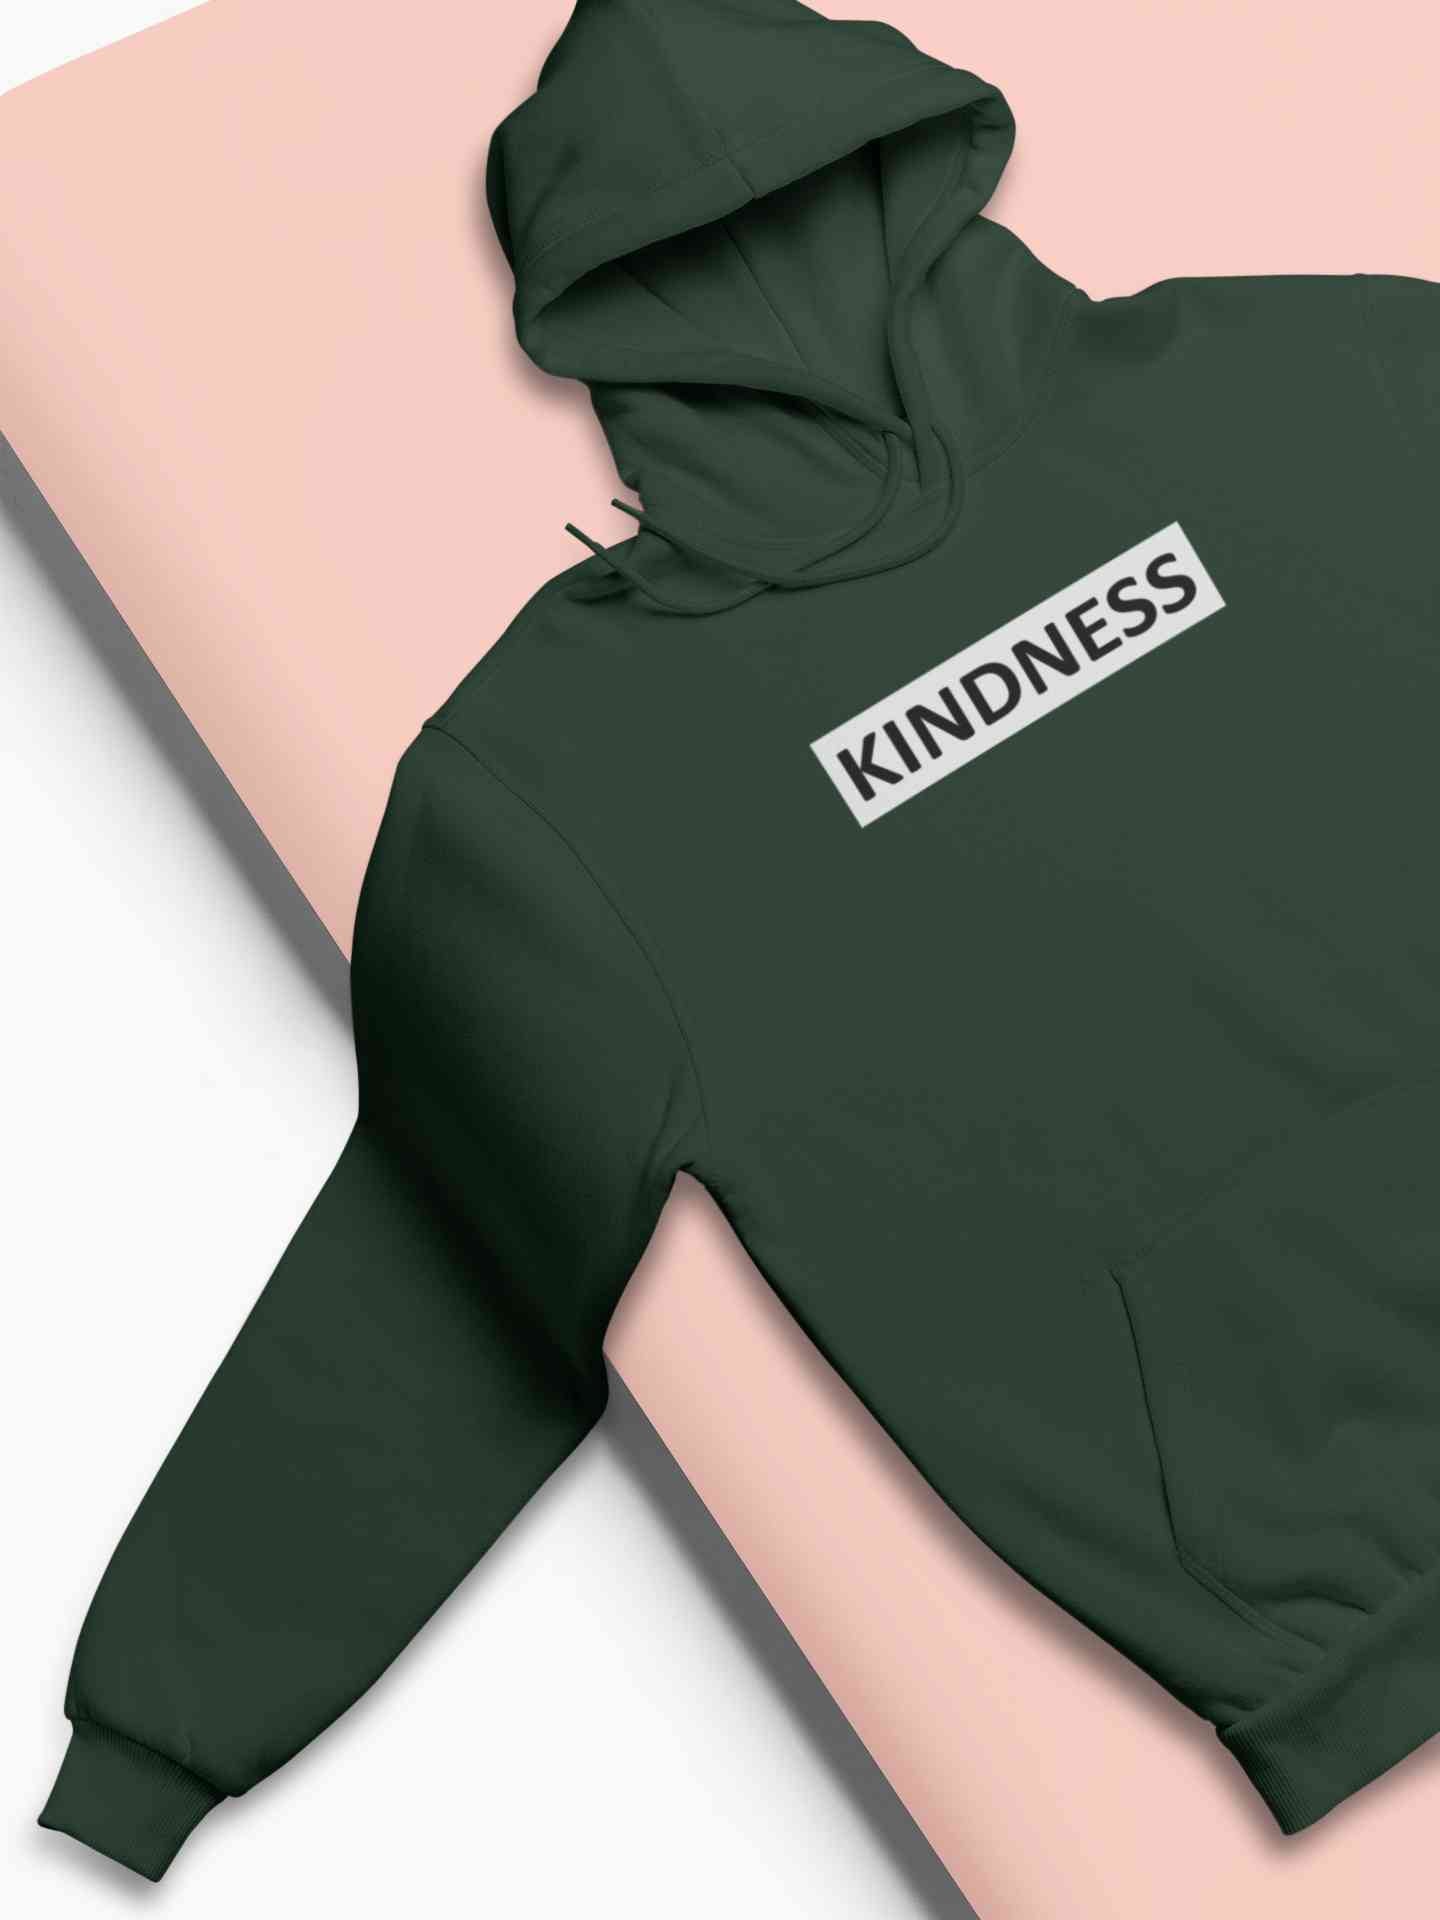 Kindness Hoodies for Women-FunkyTeesClub